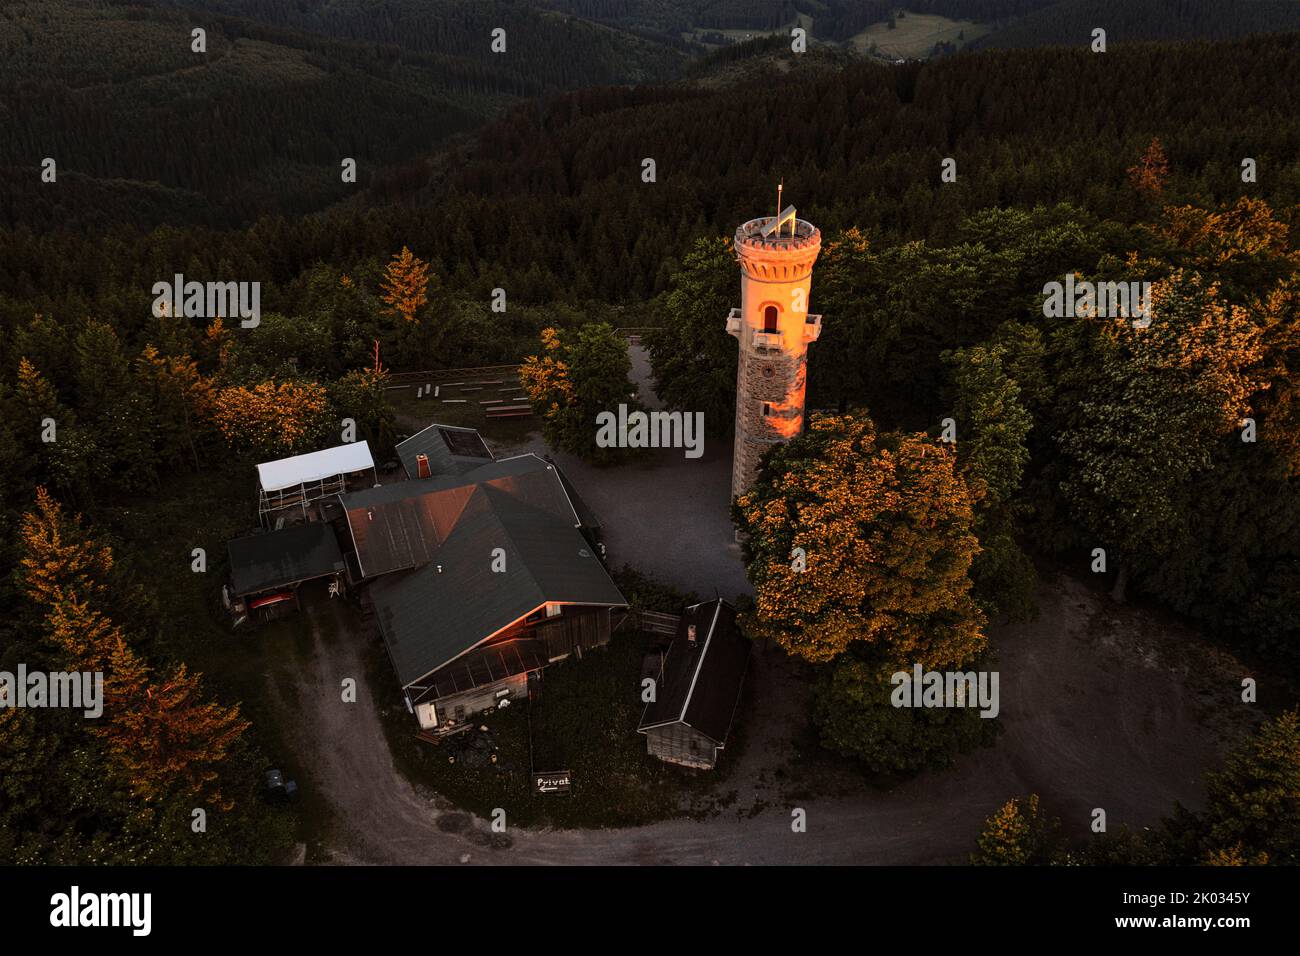 Allemagne, Thuringe, Ilmenau, les rayons du soleil du premier matin illuminent comme un spot la tour d'observation sur le Kickelhahn, forêt, vue d'ensemble, photo aérienne Banque D'Images